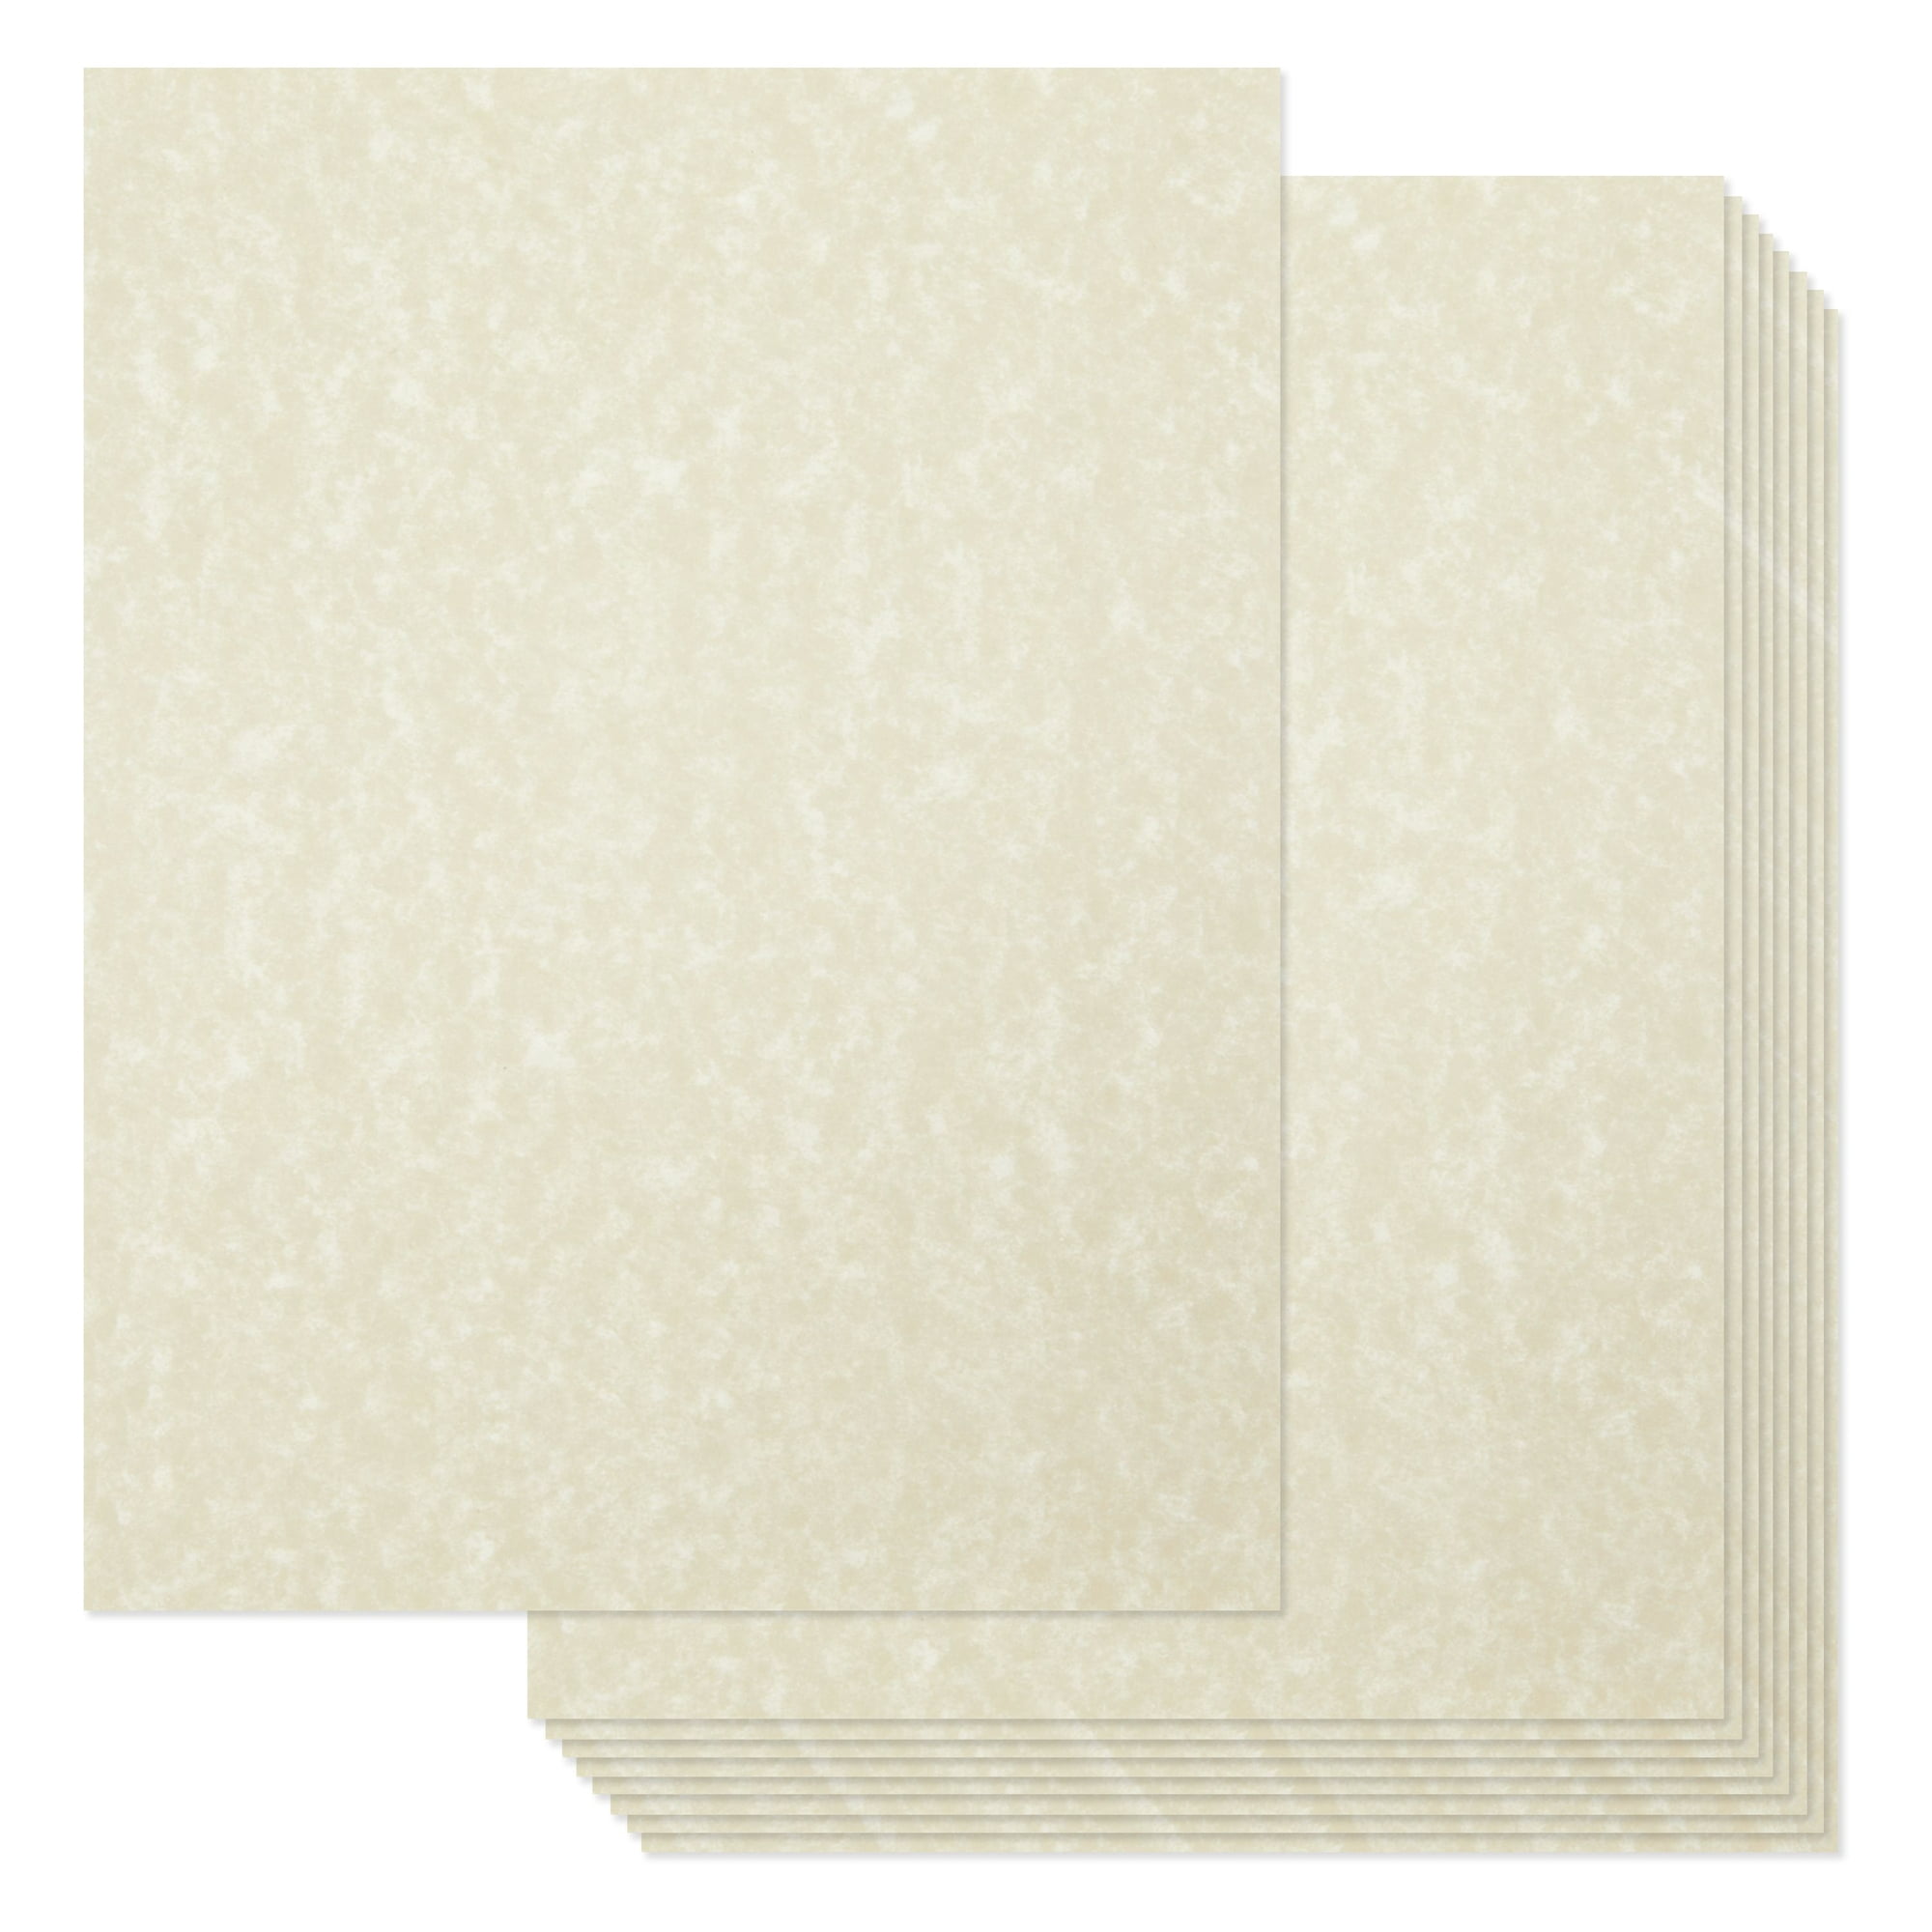 Purchase Quality Transparent Parchment Paper 